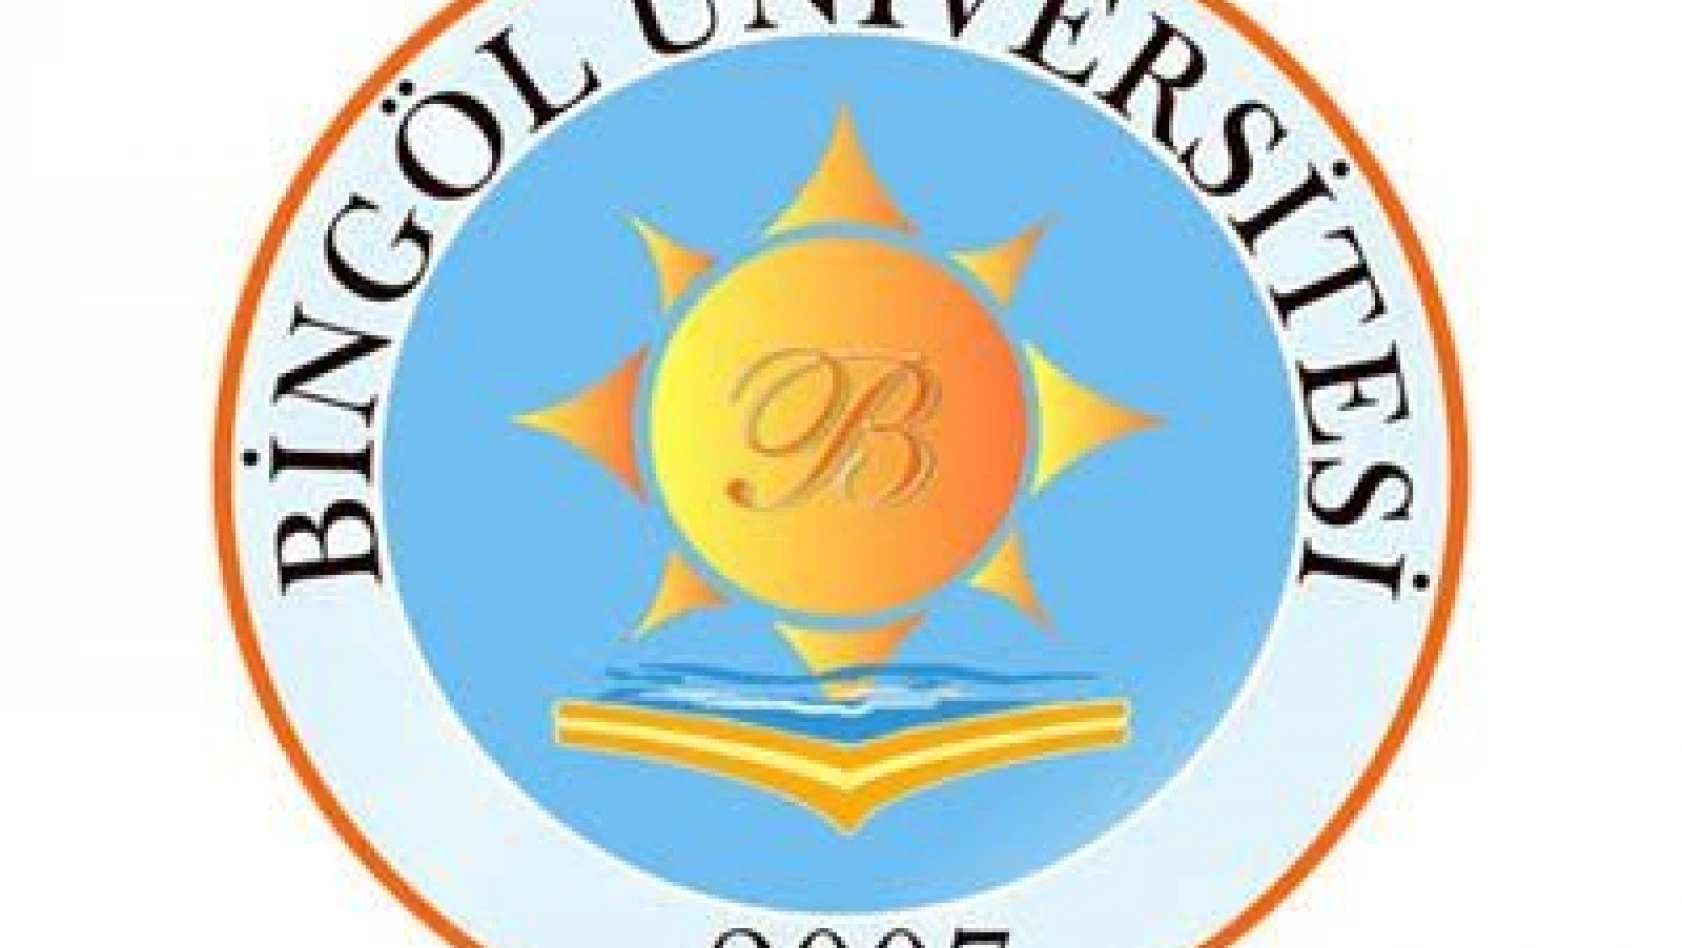 Bingöl Üniversitesi Öğretim Üyesi alıyor